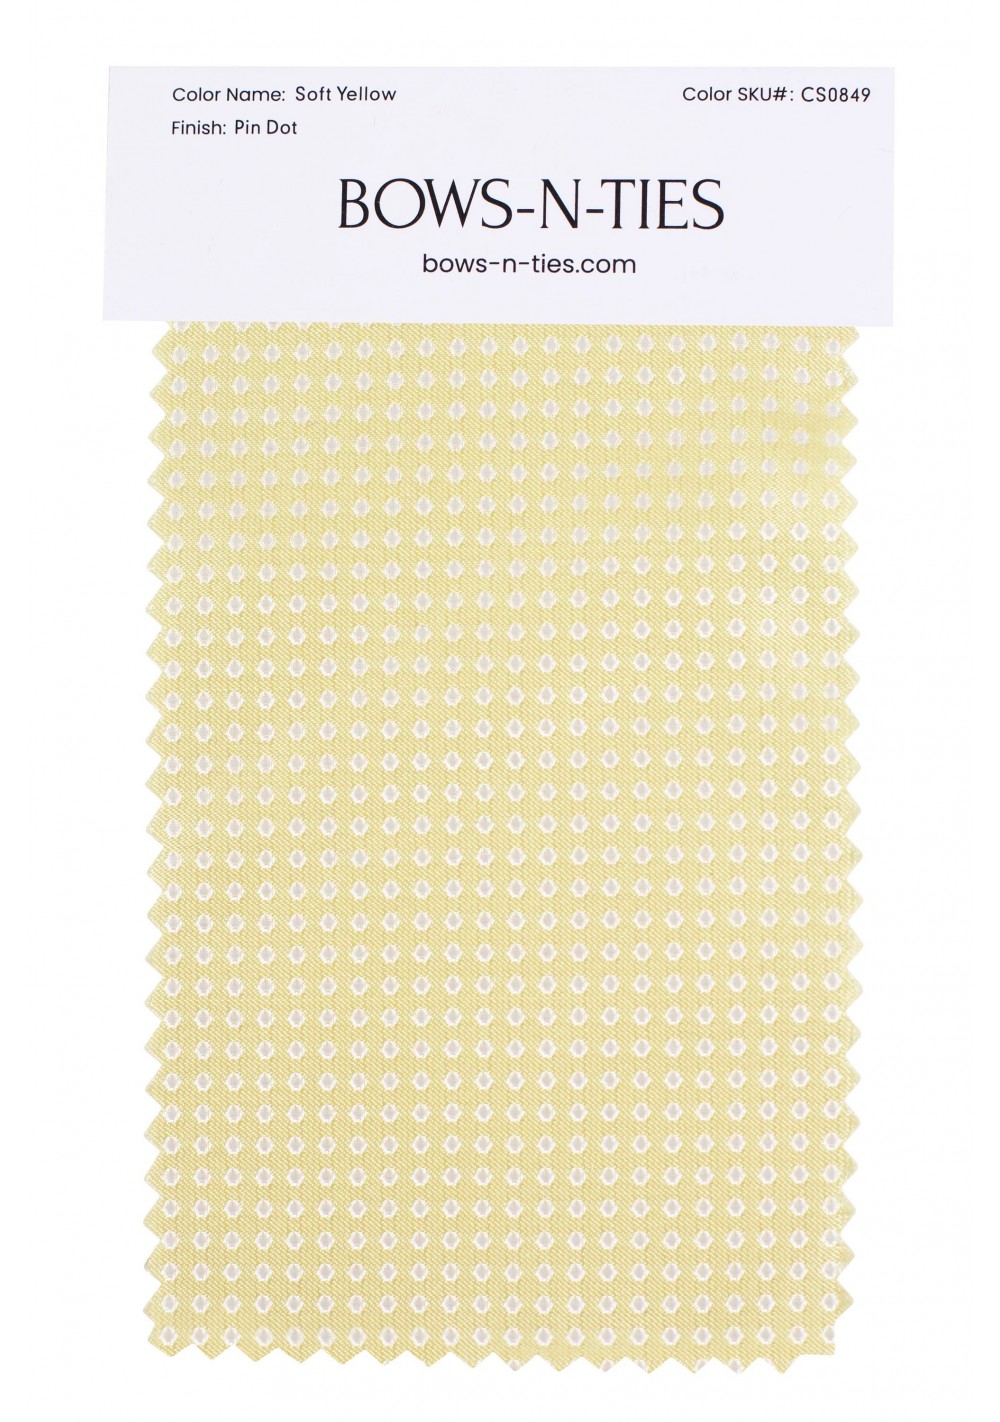 Pin Dot Fabric Swatch - Soft Yellow